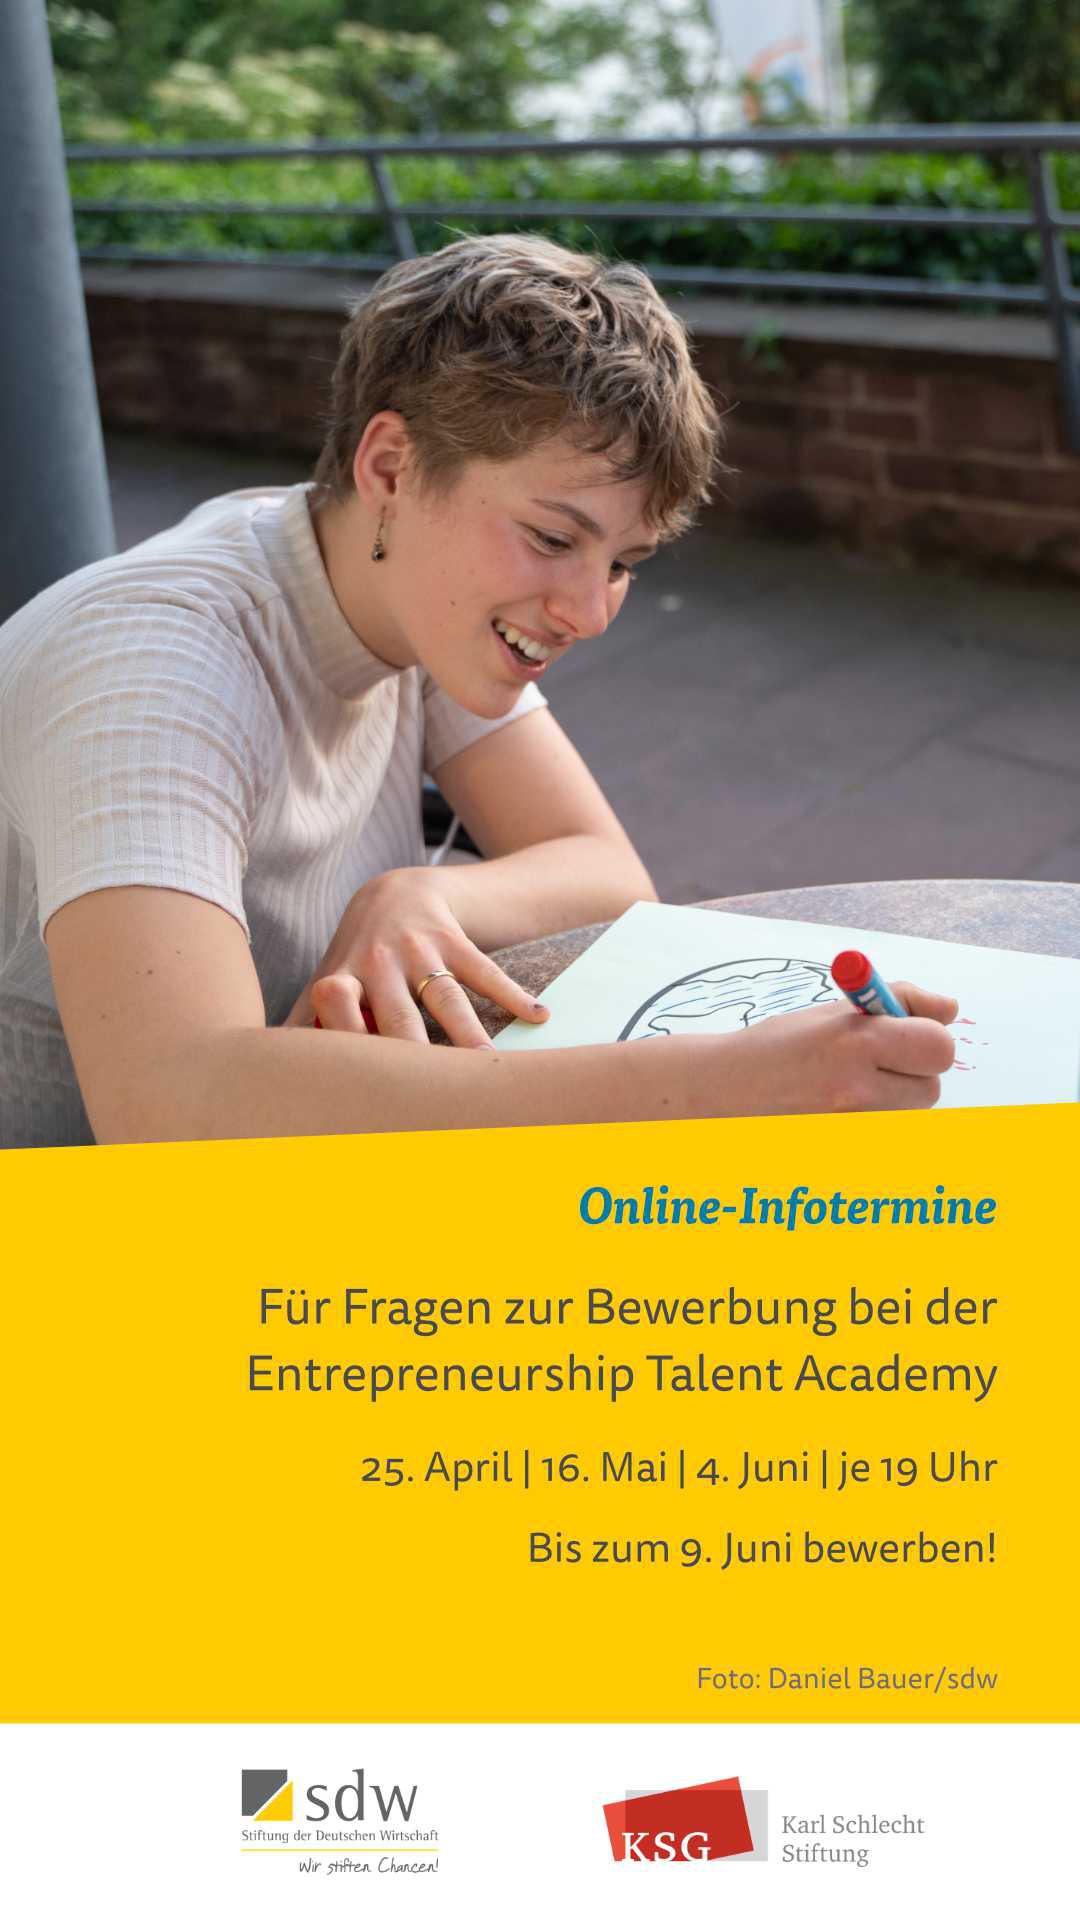 Entrepreneurship Talent Academy